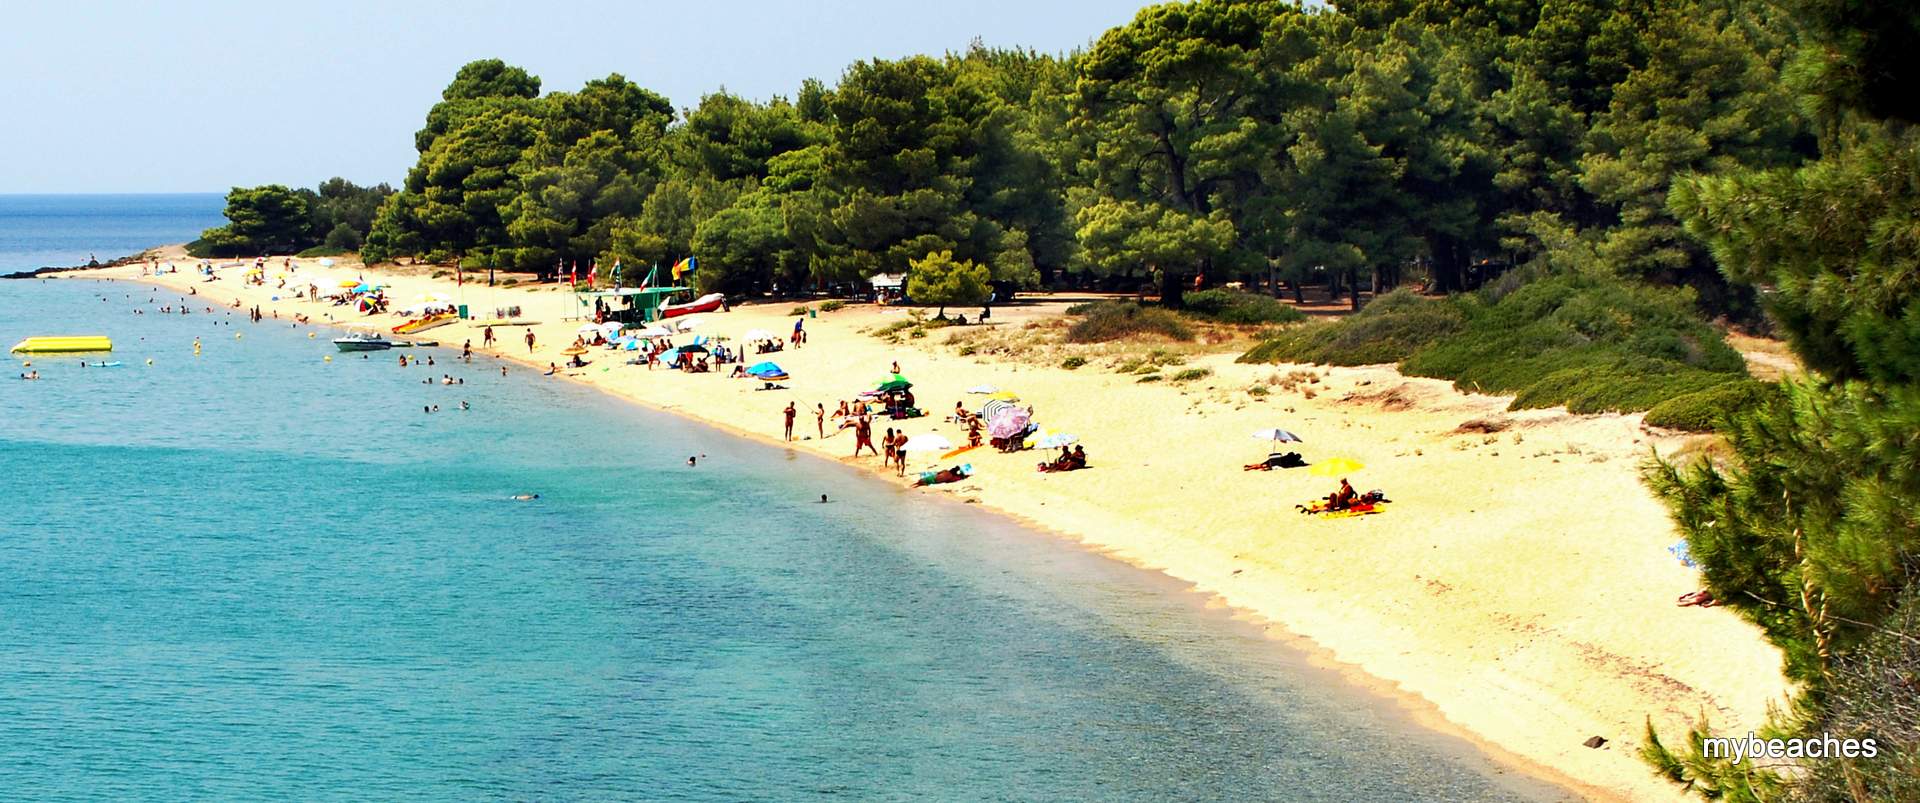 Λαγόμανδρα παραλία, Σιθωνία, Χαλκιδική, Ελλάδα